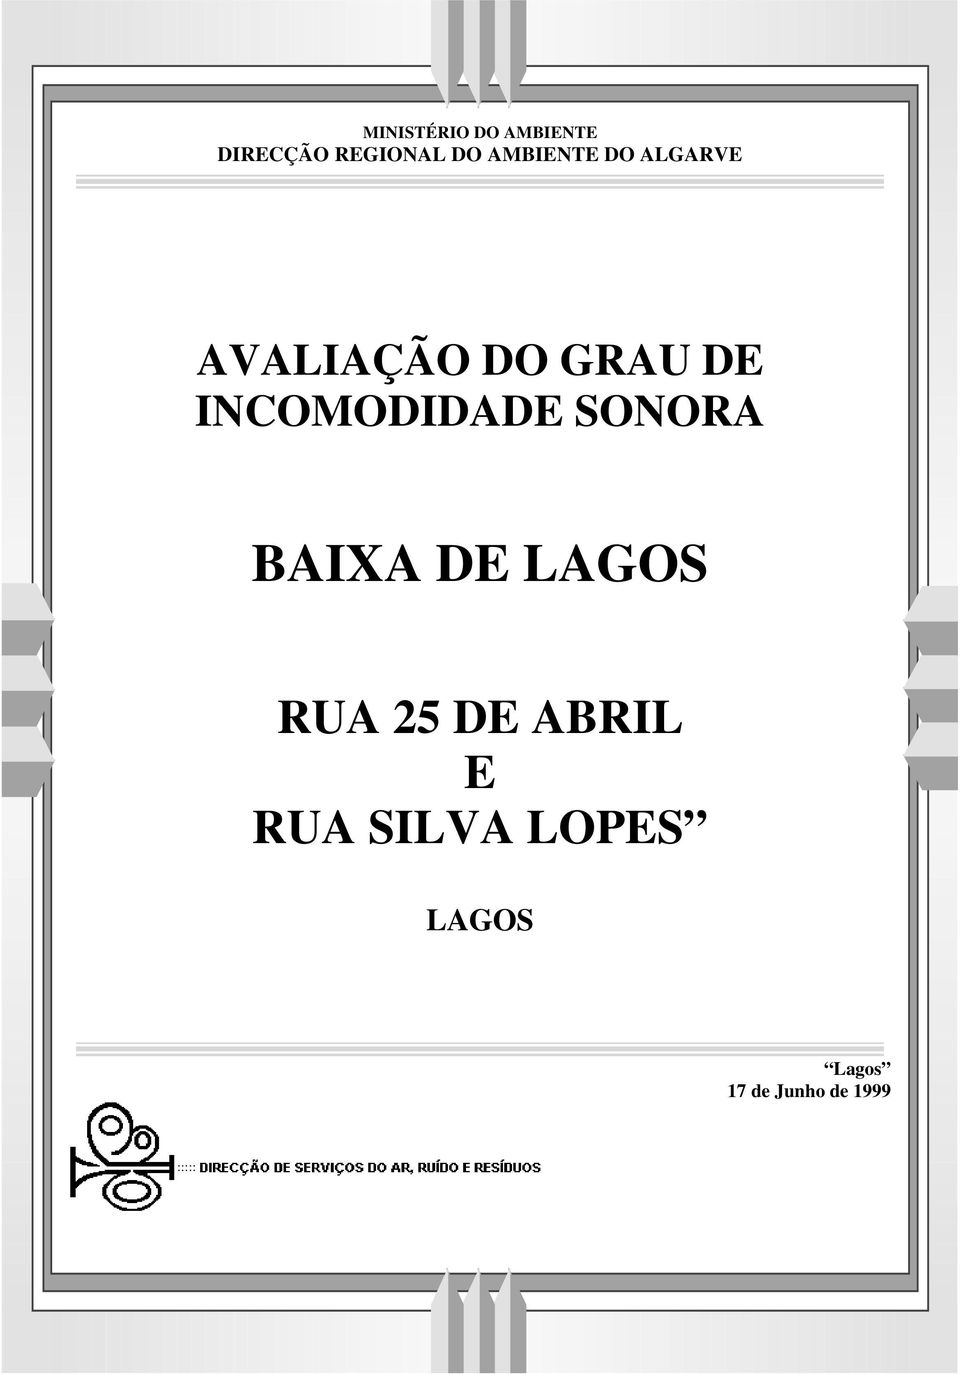 BAIXA DE LAGOS RUA 25